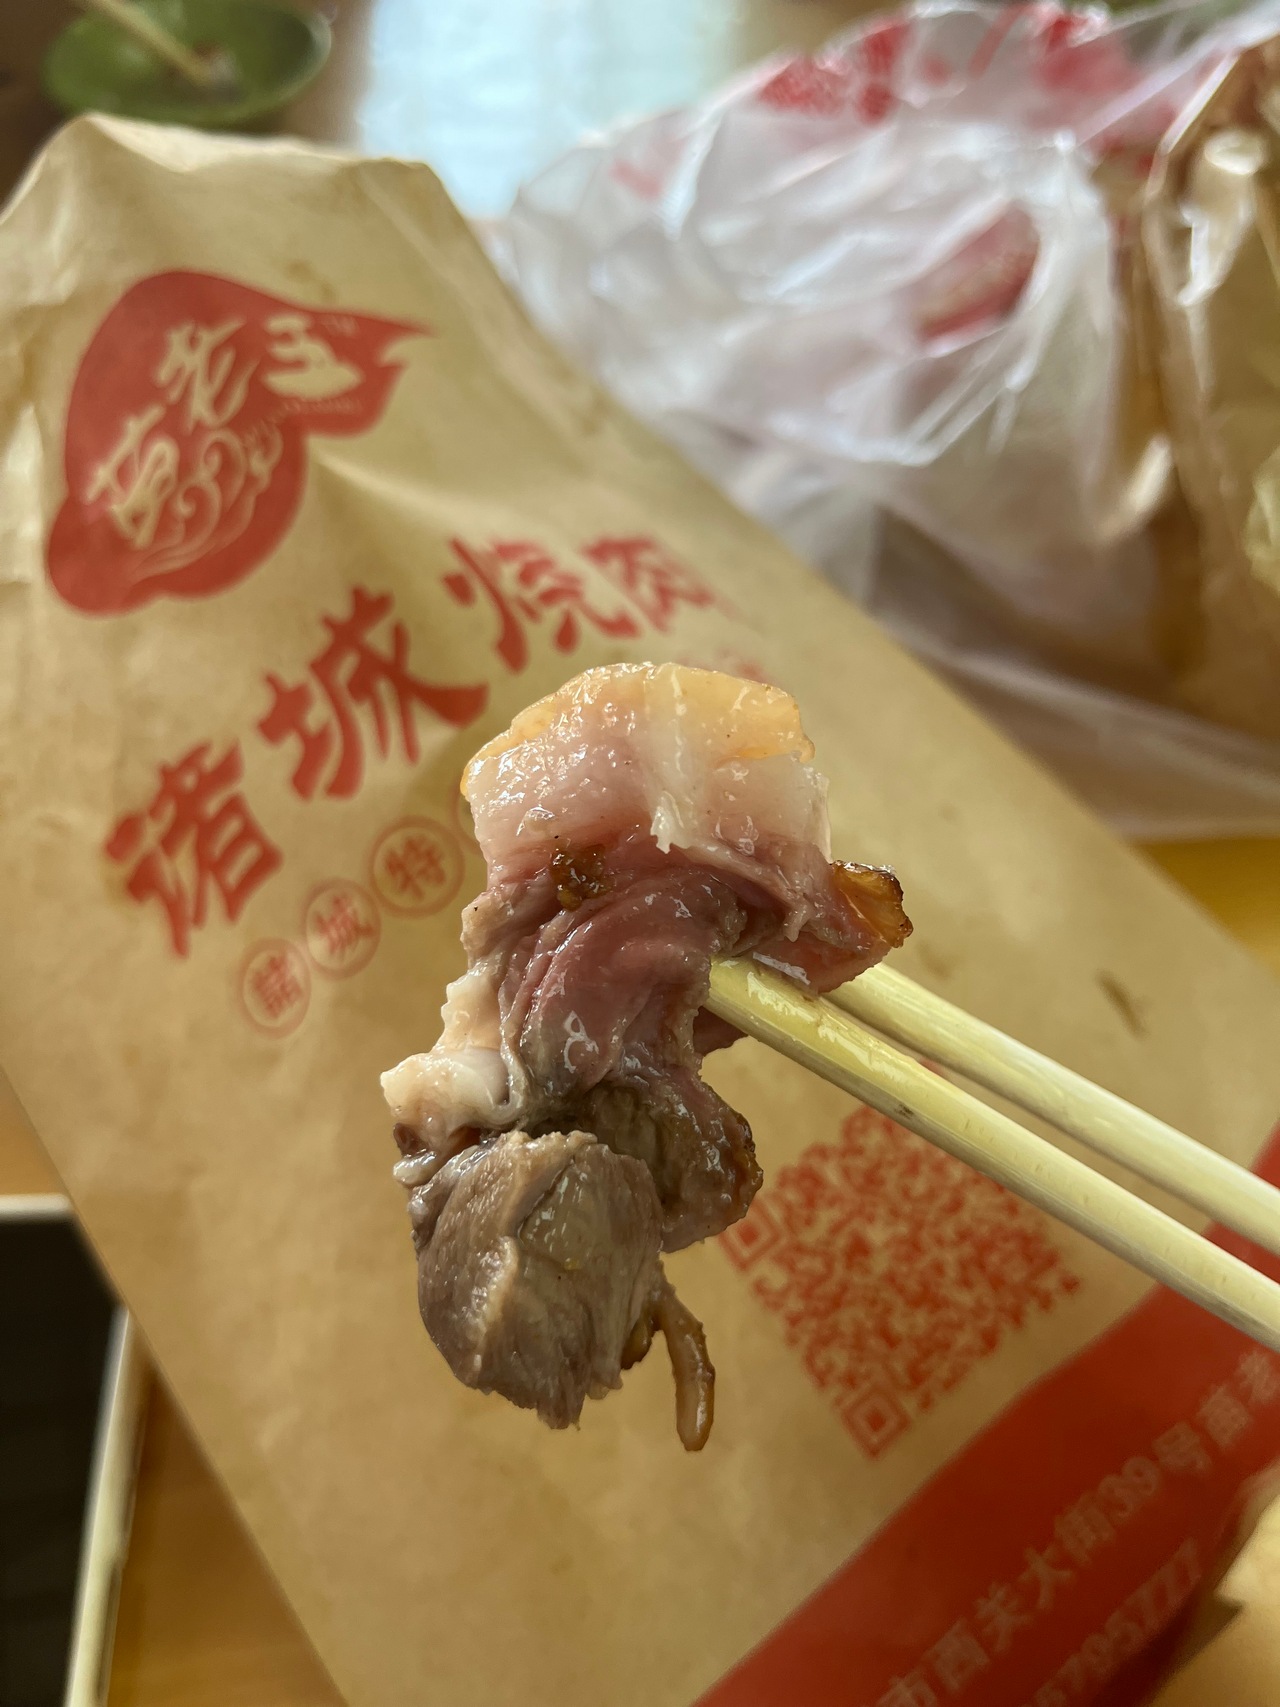 購入した「诸城烧肉」は、豚の頭部の肉であった。ぷりぷりでうまい！